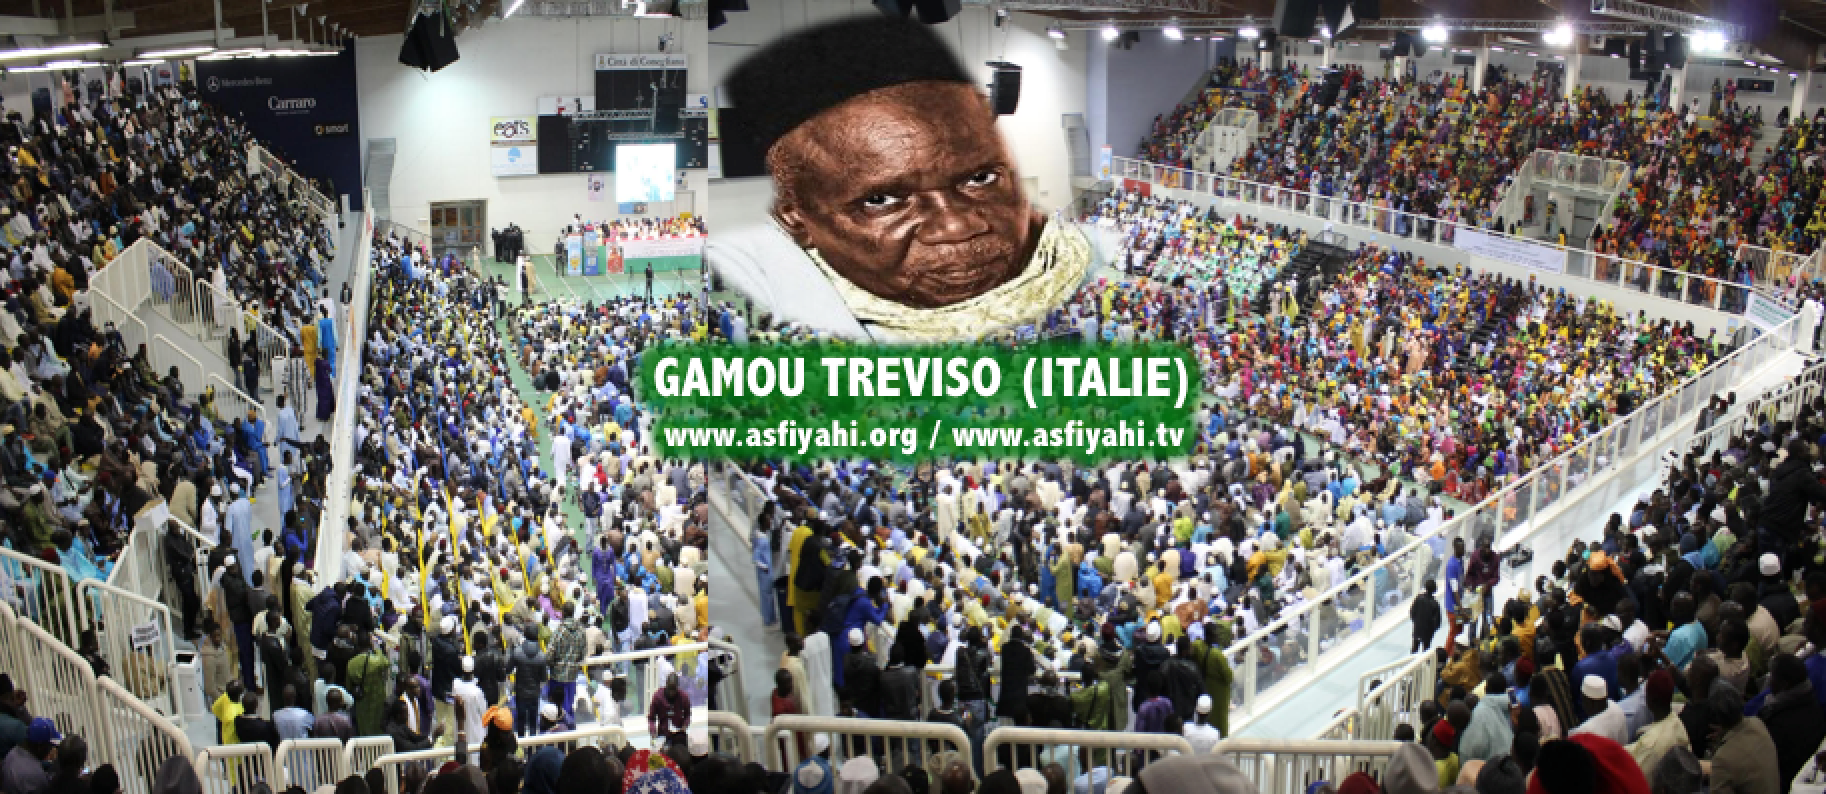 ITALIE - GAMOU DE TREVISO 2017 - Tout est fin prêt pour un bon déroulement de cette 22éme édition, ce Samedi 15 Avril